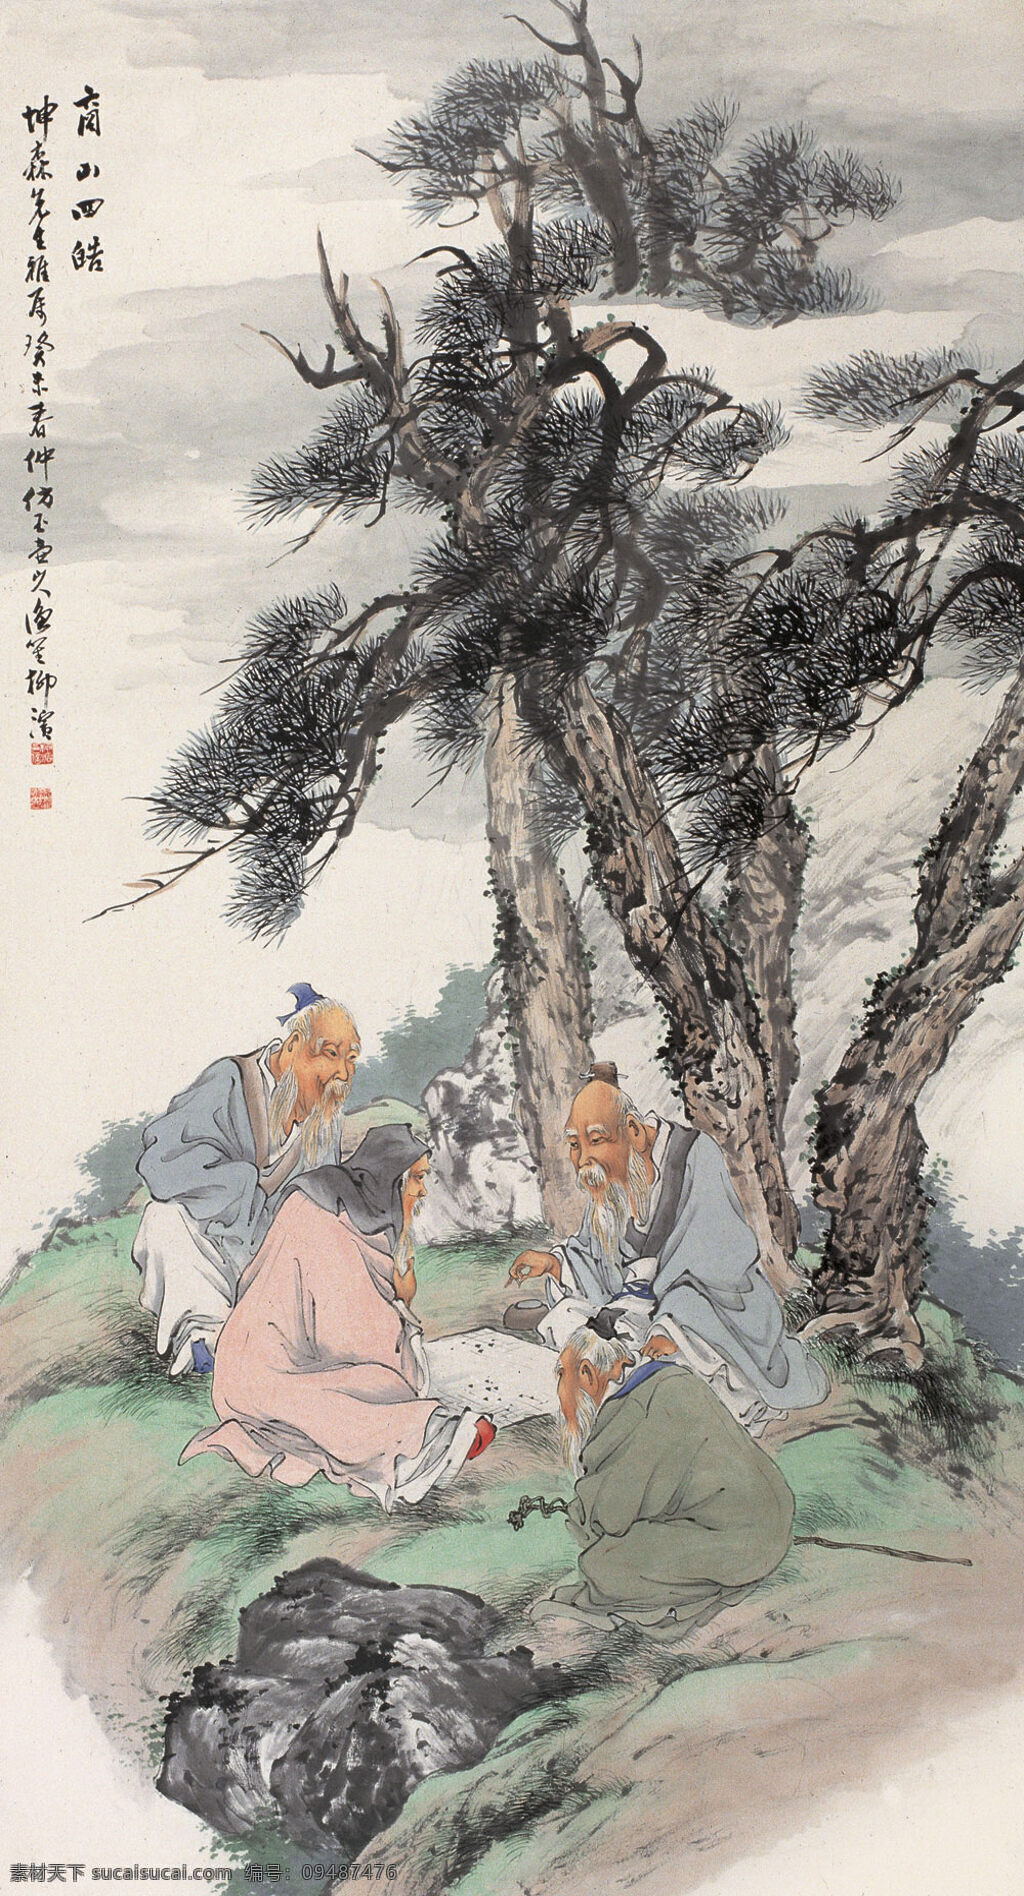 中国画 国画 国宝 水墨画 素描画 名画 世界名画 文化艺术 绘画书法